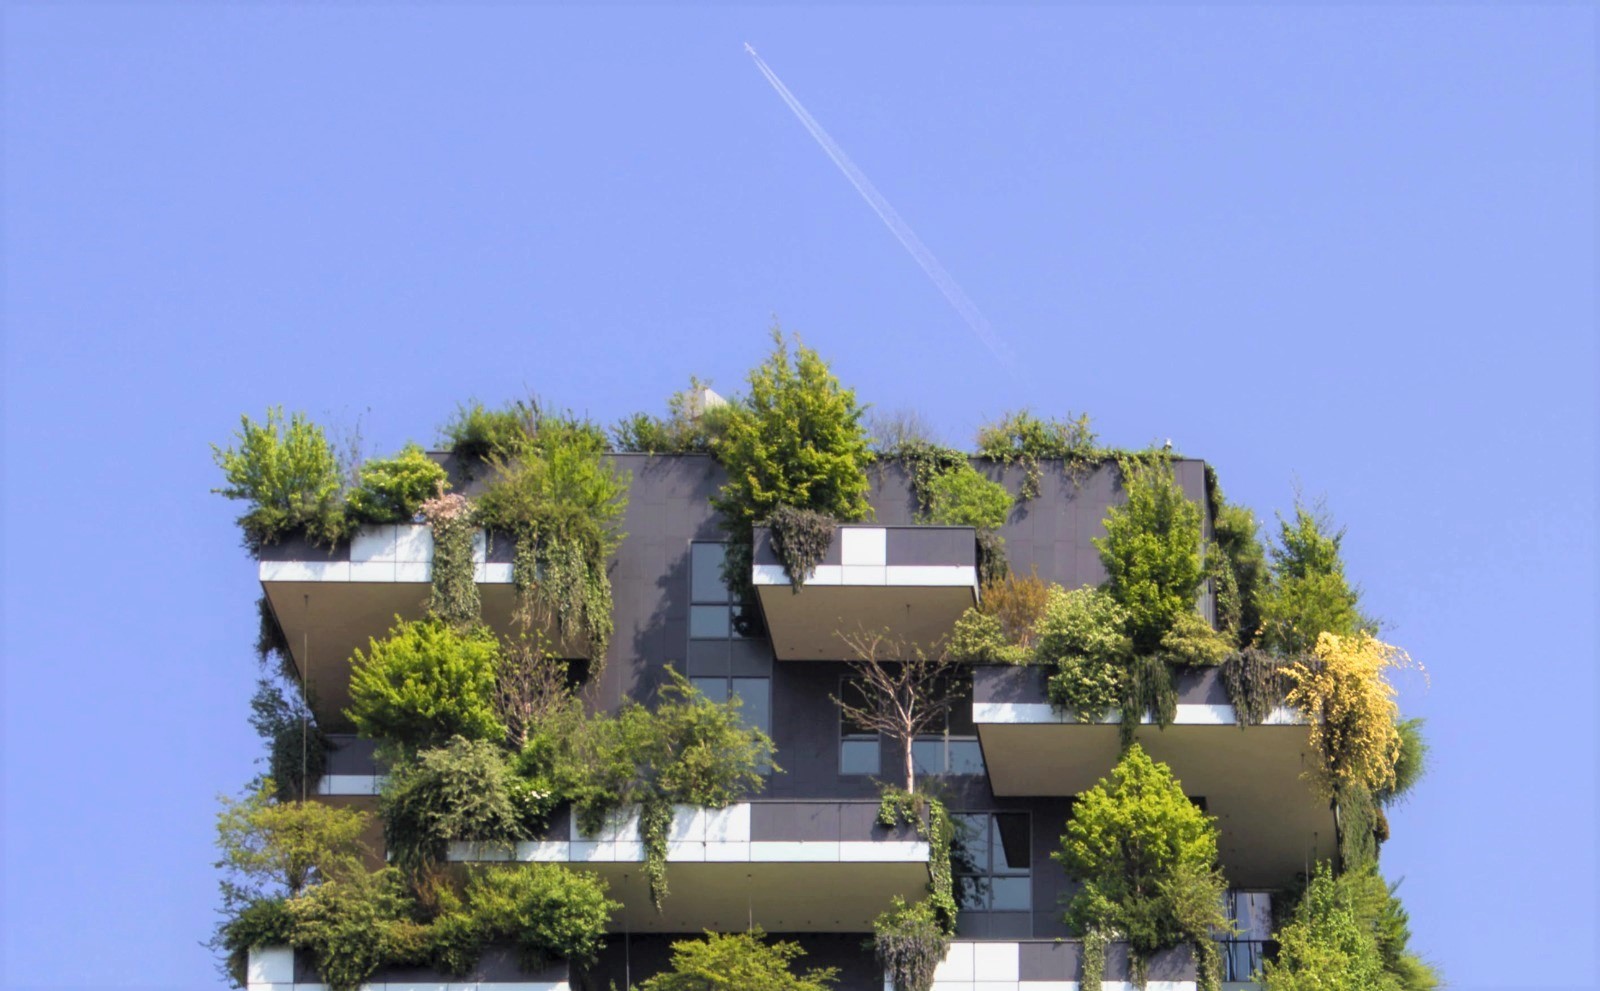 Foto del Bosco verticale di Milano con aereo che vola in alto nel cielo